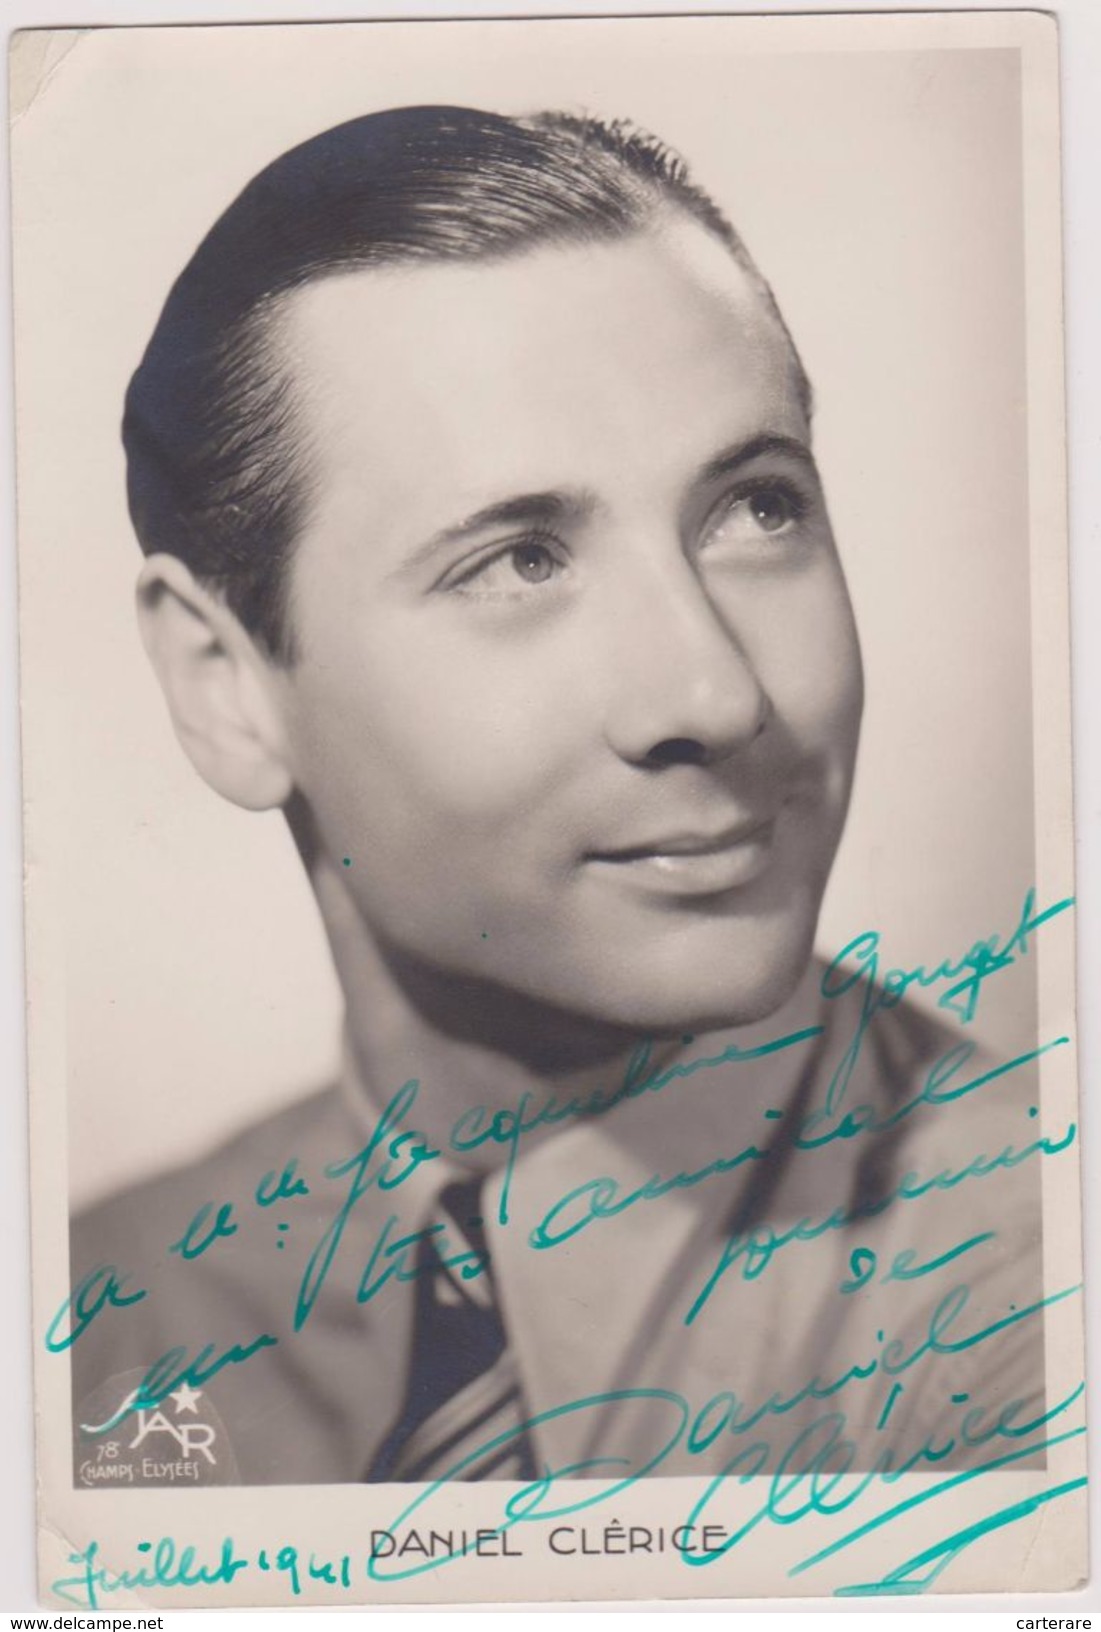 CARTE PHOTO D´ARTISTE,DANIEL CLERICE,1941,DEDICACE,SYGNATURE,AUTOGRAPHE,ACTEUR FRANCAIS,né à PARIS ,mort à BORDEAUX - Künstler